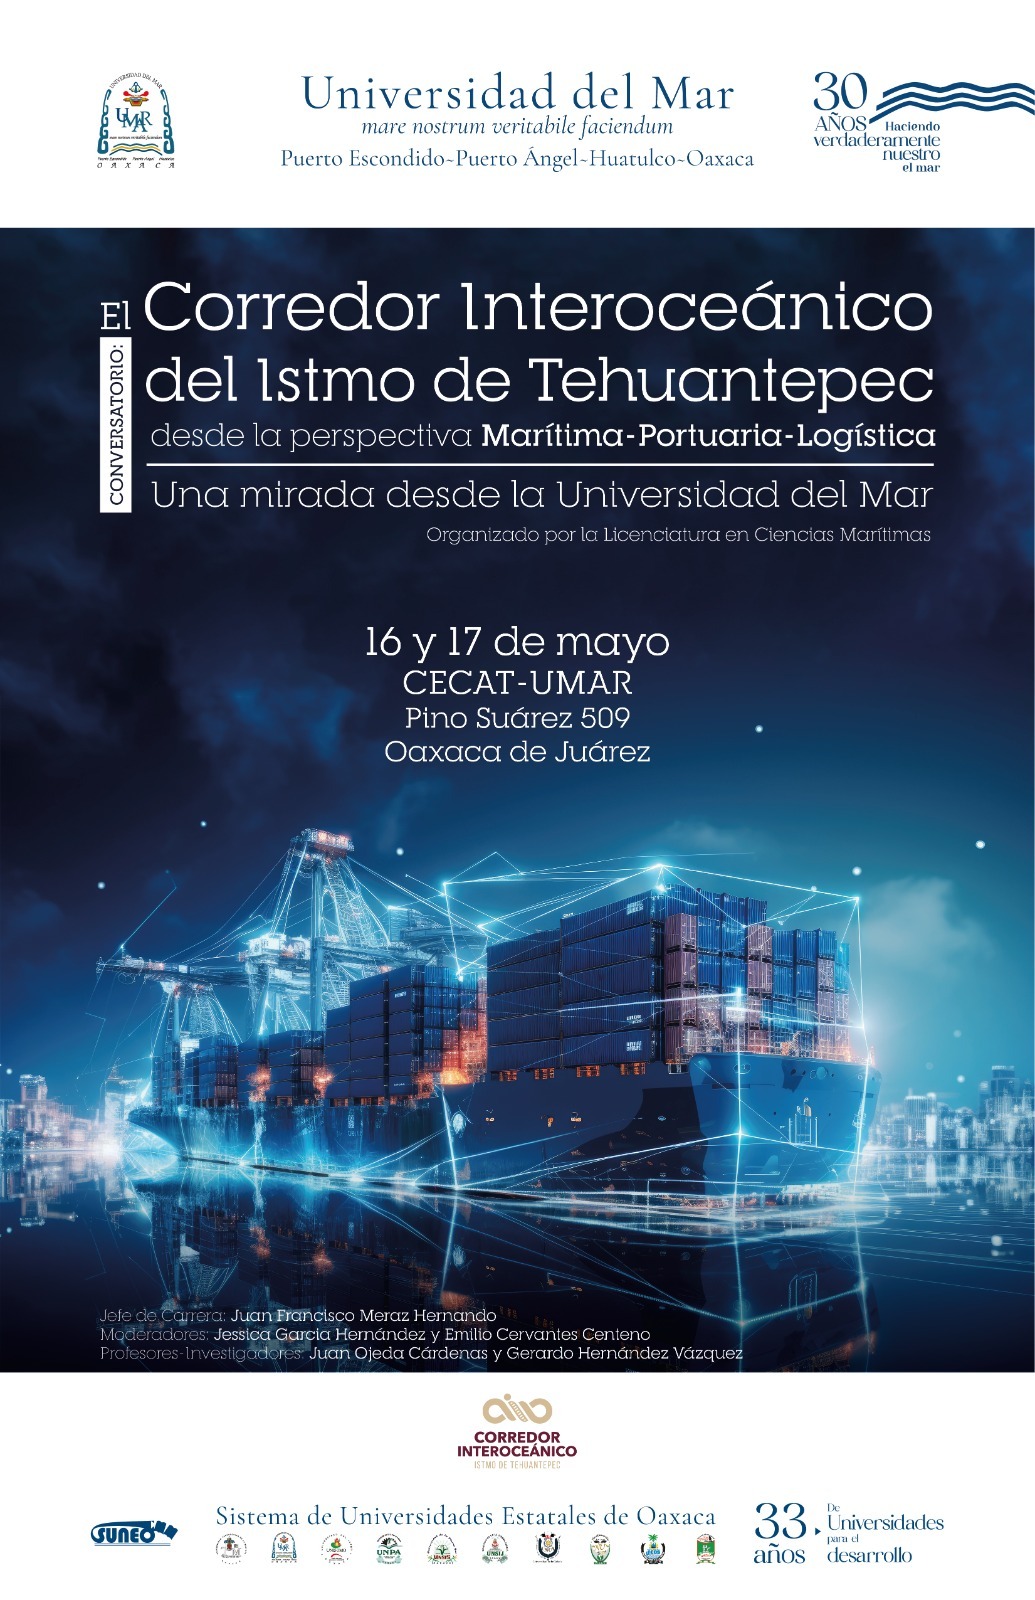 Realizarán Conversatorio sobre el Corredor Interoceánico del Istmo de Tehuantepec